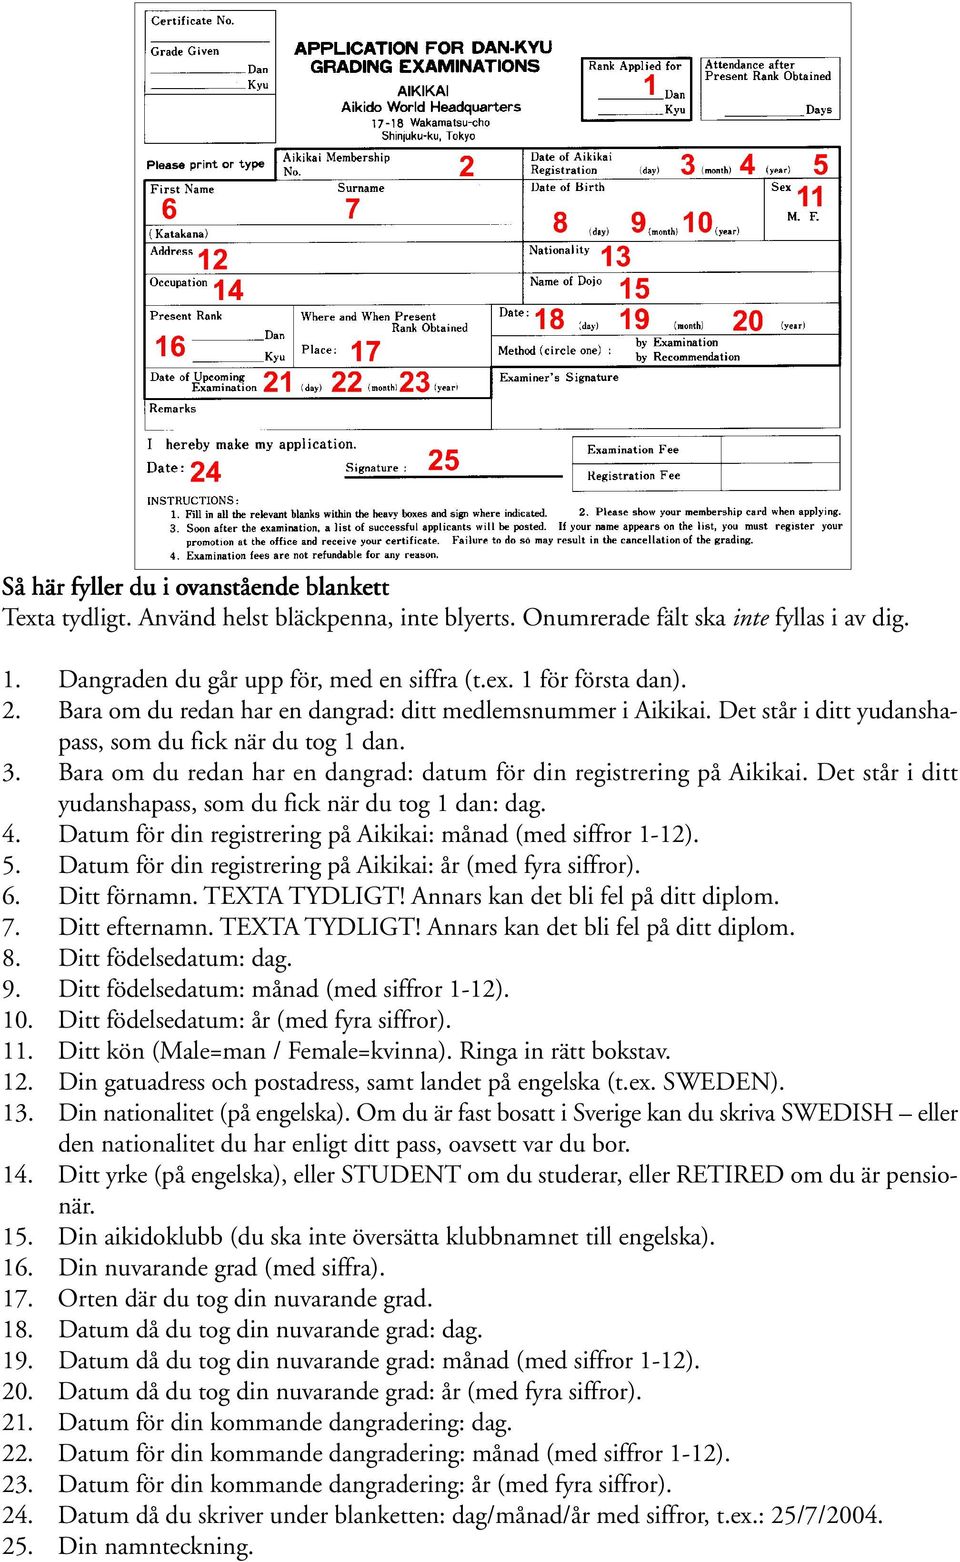 Det står i ditt yudanshapass, som du fick när du tog 1 dan: dag. 4. Datum för din registrering på Aikikai: månad (med siffror 1-12). 5. Datum för din registrering på Aikikai: år (med fyra siffror). 6.